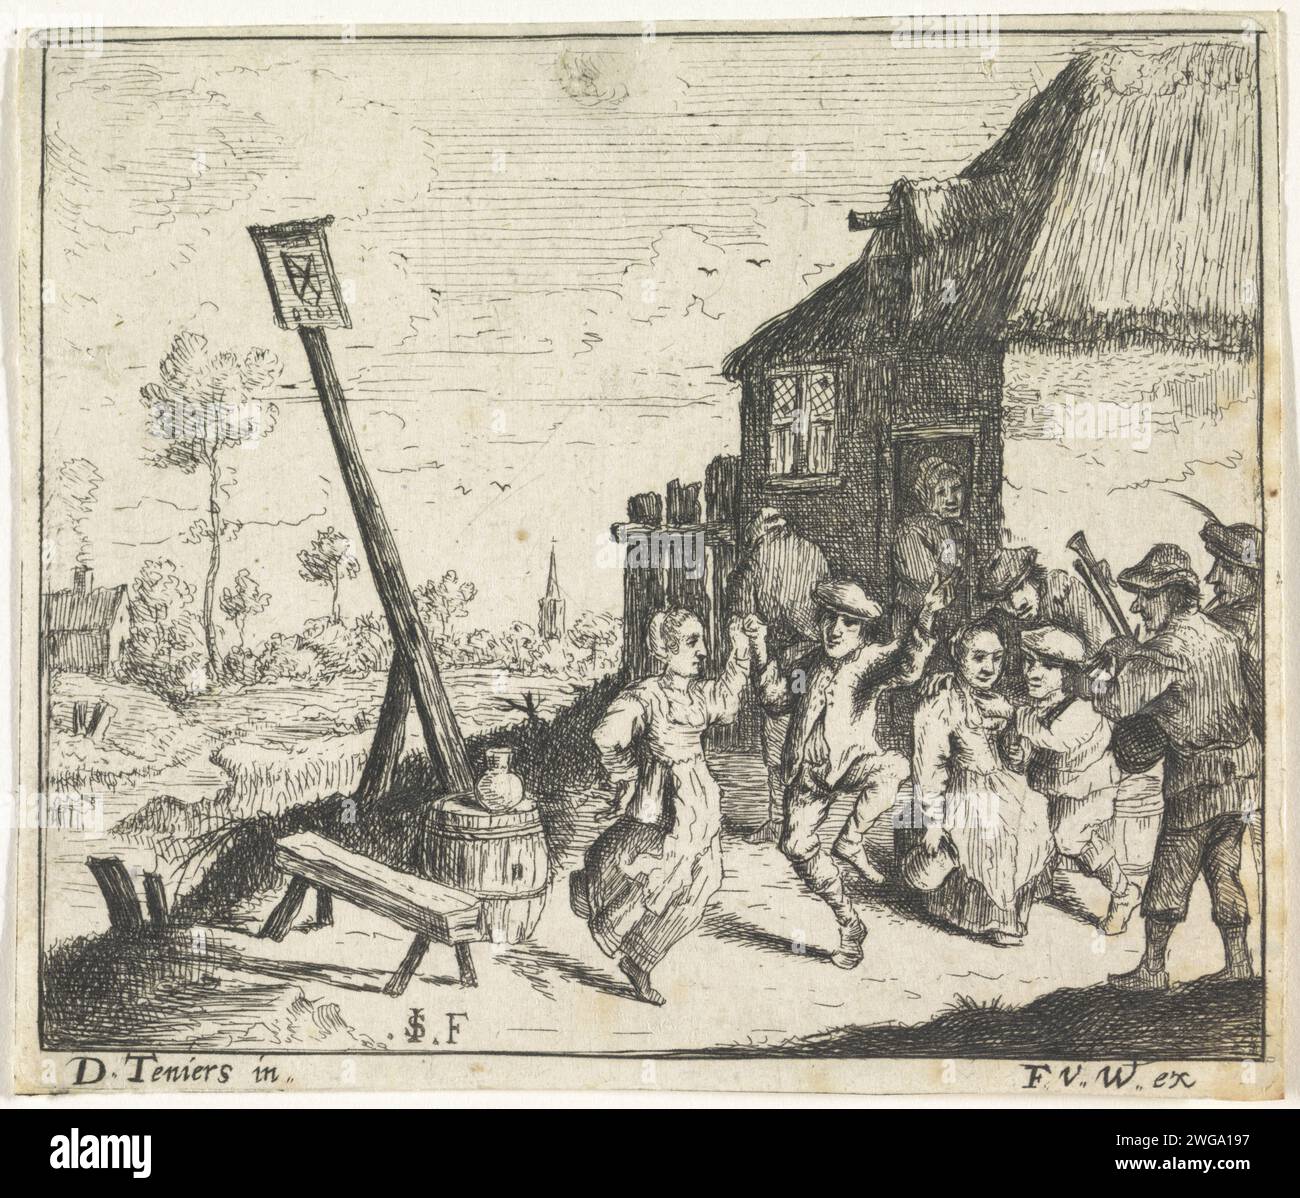 Dance for the inn, Monogrammist SI, nach David Teniers, 1624 - 1679 Drucke Ein paar Tänze für ein gasthaus zur Musik eines Dudelsackspielers. Die trinkenden Bauern sind vor dem gasthaus. Antwerpener Papier ätzt ein Paar, das tanzt; Mann und Frau tanzt als Paar. Dudelsack, Musette Stockfoto